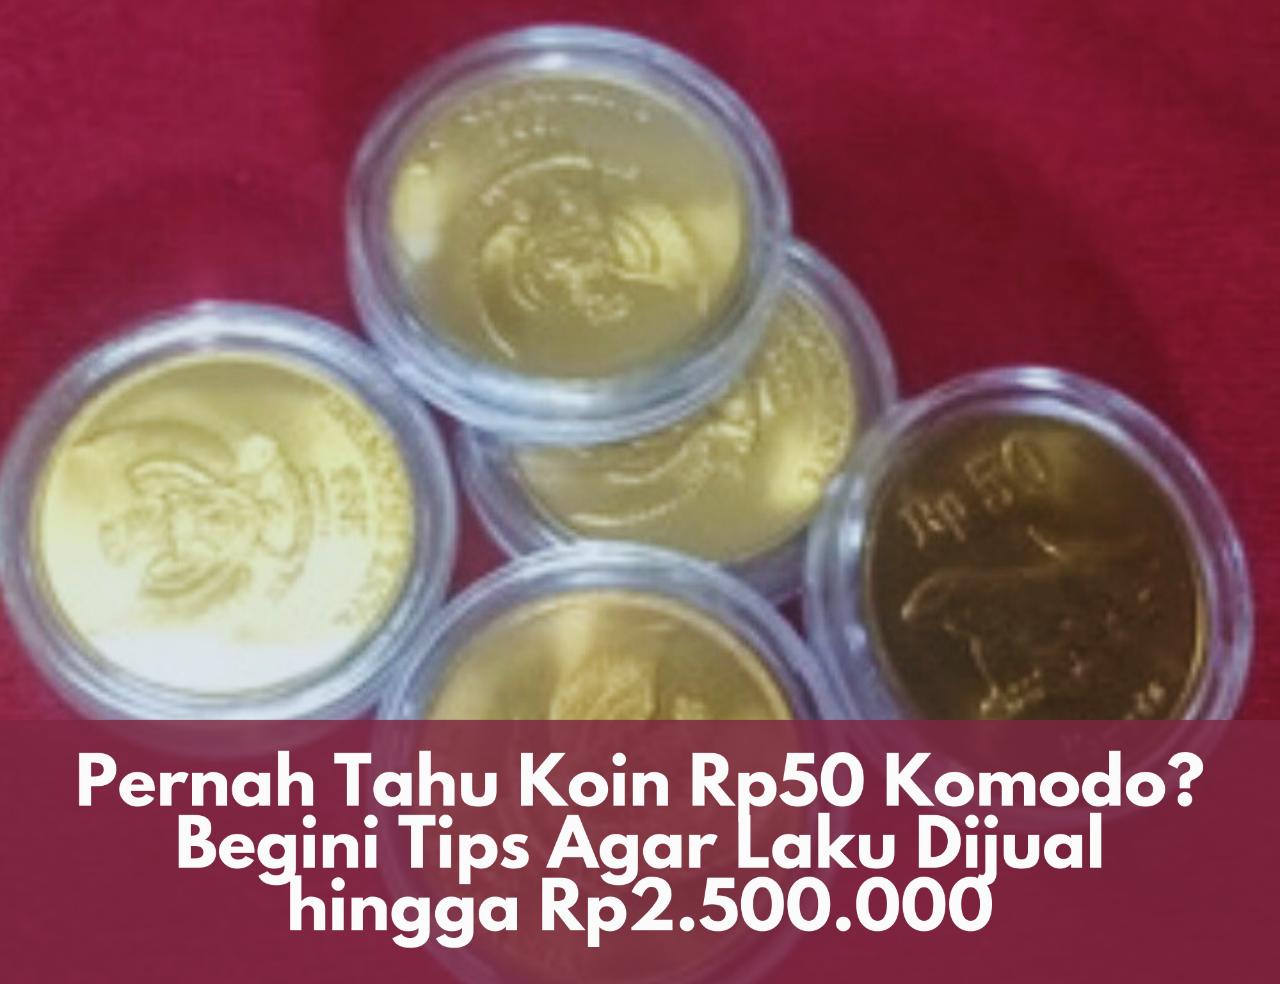 Punya Nilai Tinggi! Pernah Tahu Koin Rp50 Komodo? Begini Tips Agar Laku Dijual hingga Rp2.500.000